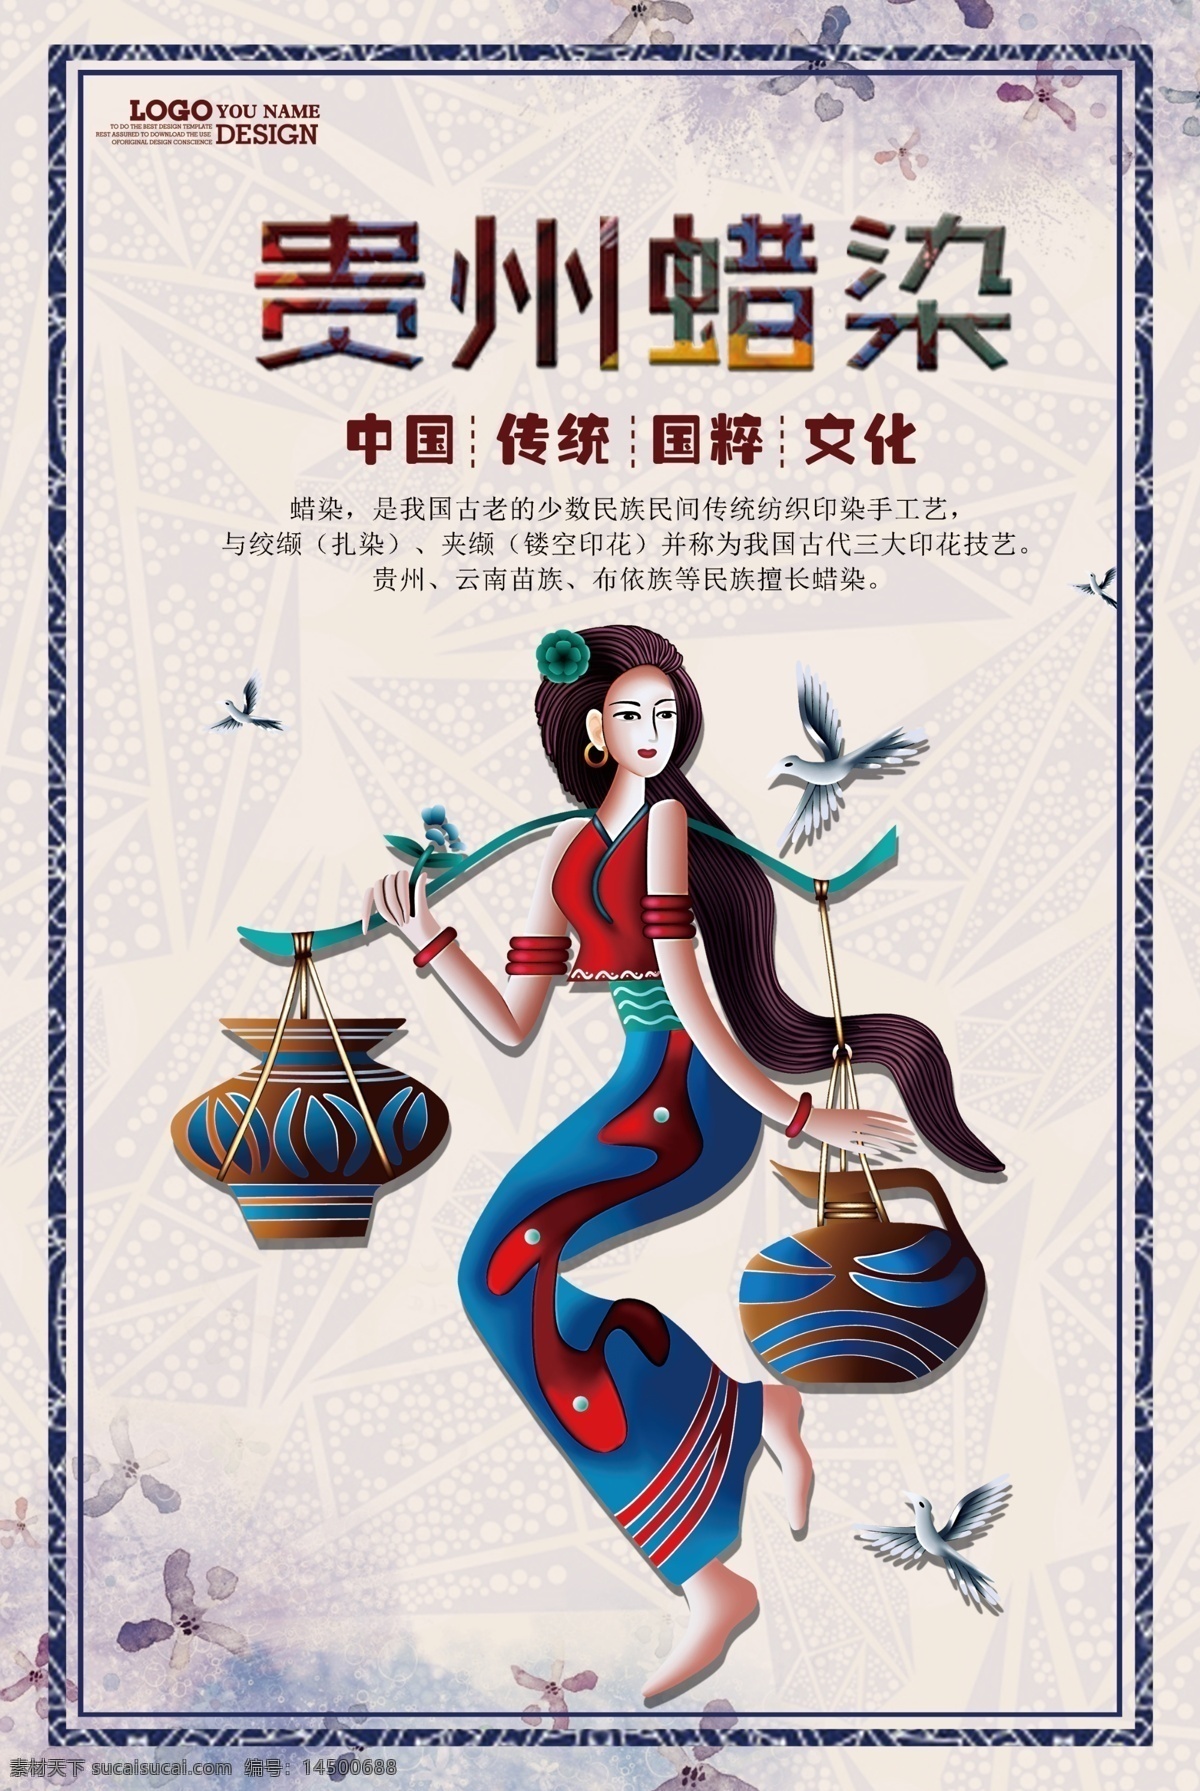 贵州蜡染海报 贵州蜡染 少数民族特色 传统工艺 人物素材 国粹